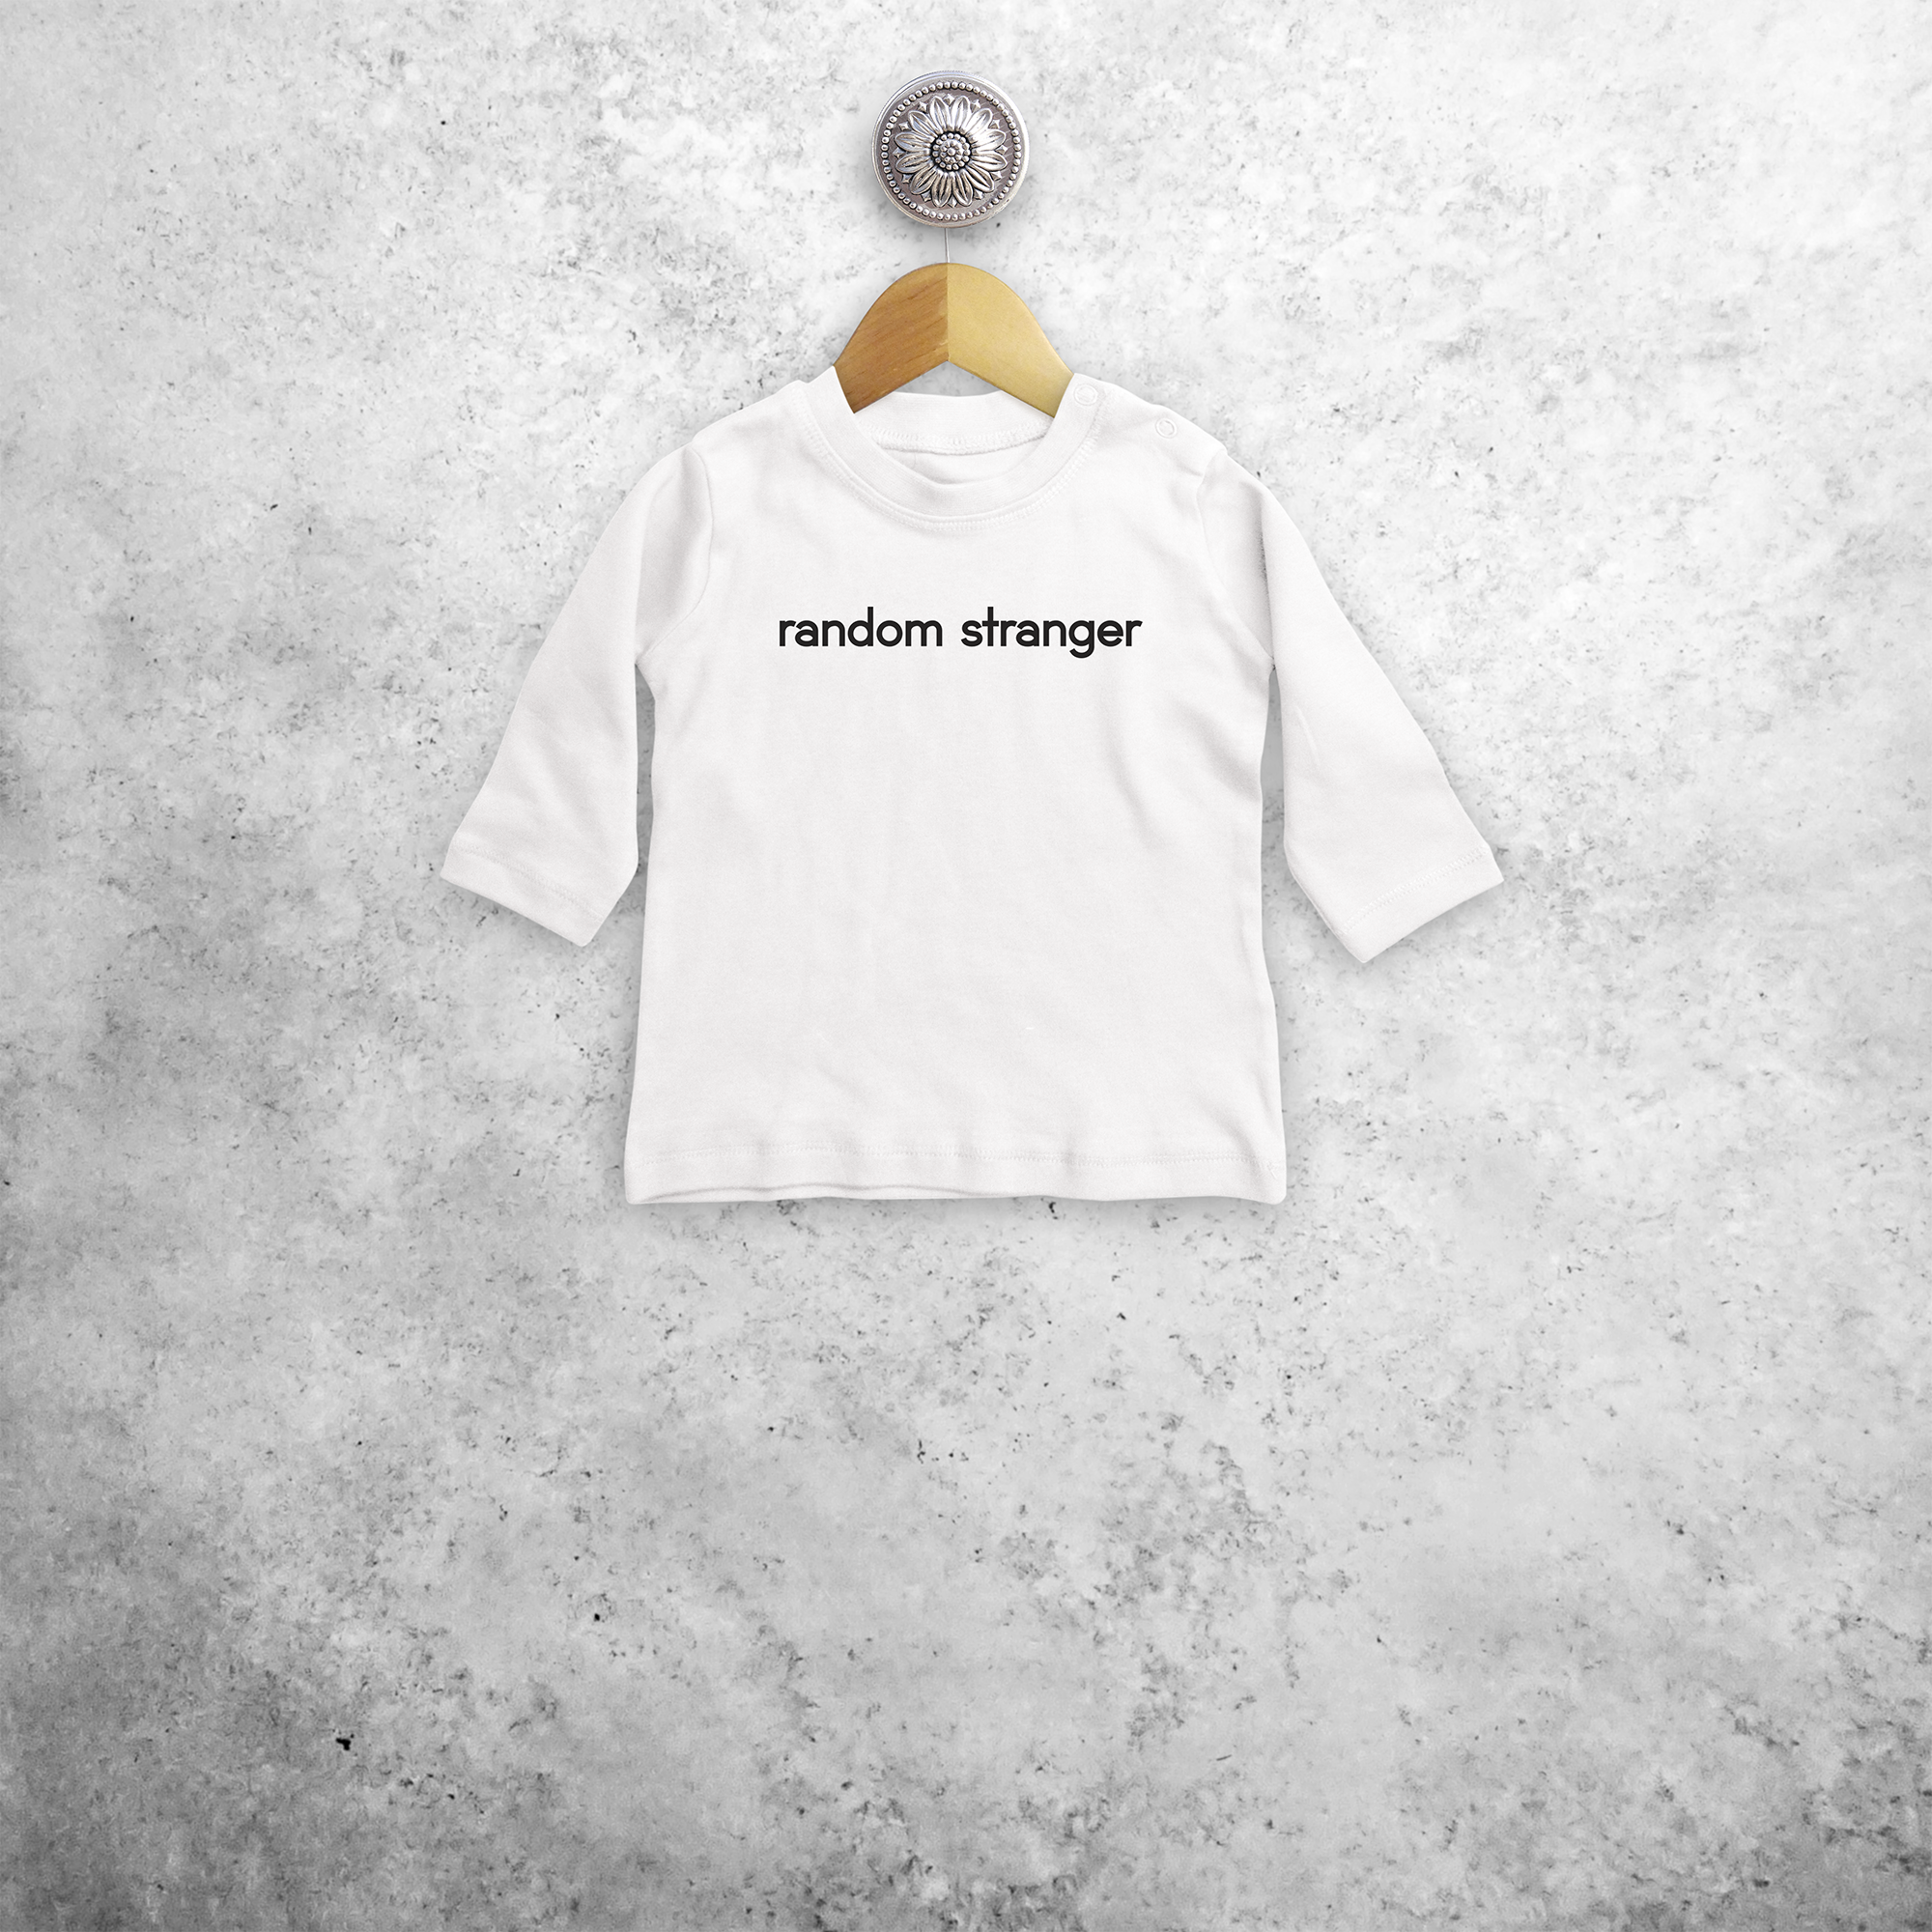 'Random stranger' baby longsleeve shirt